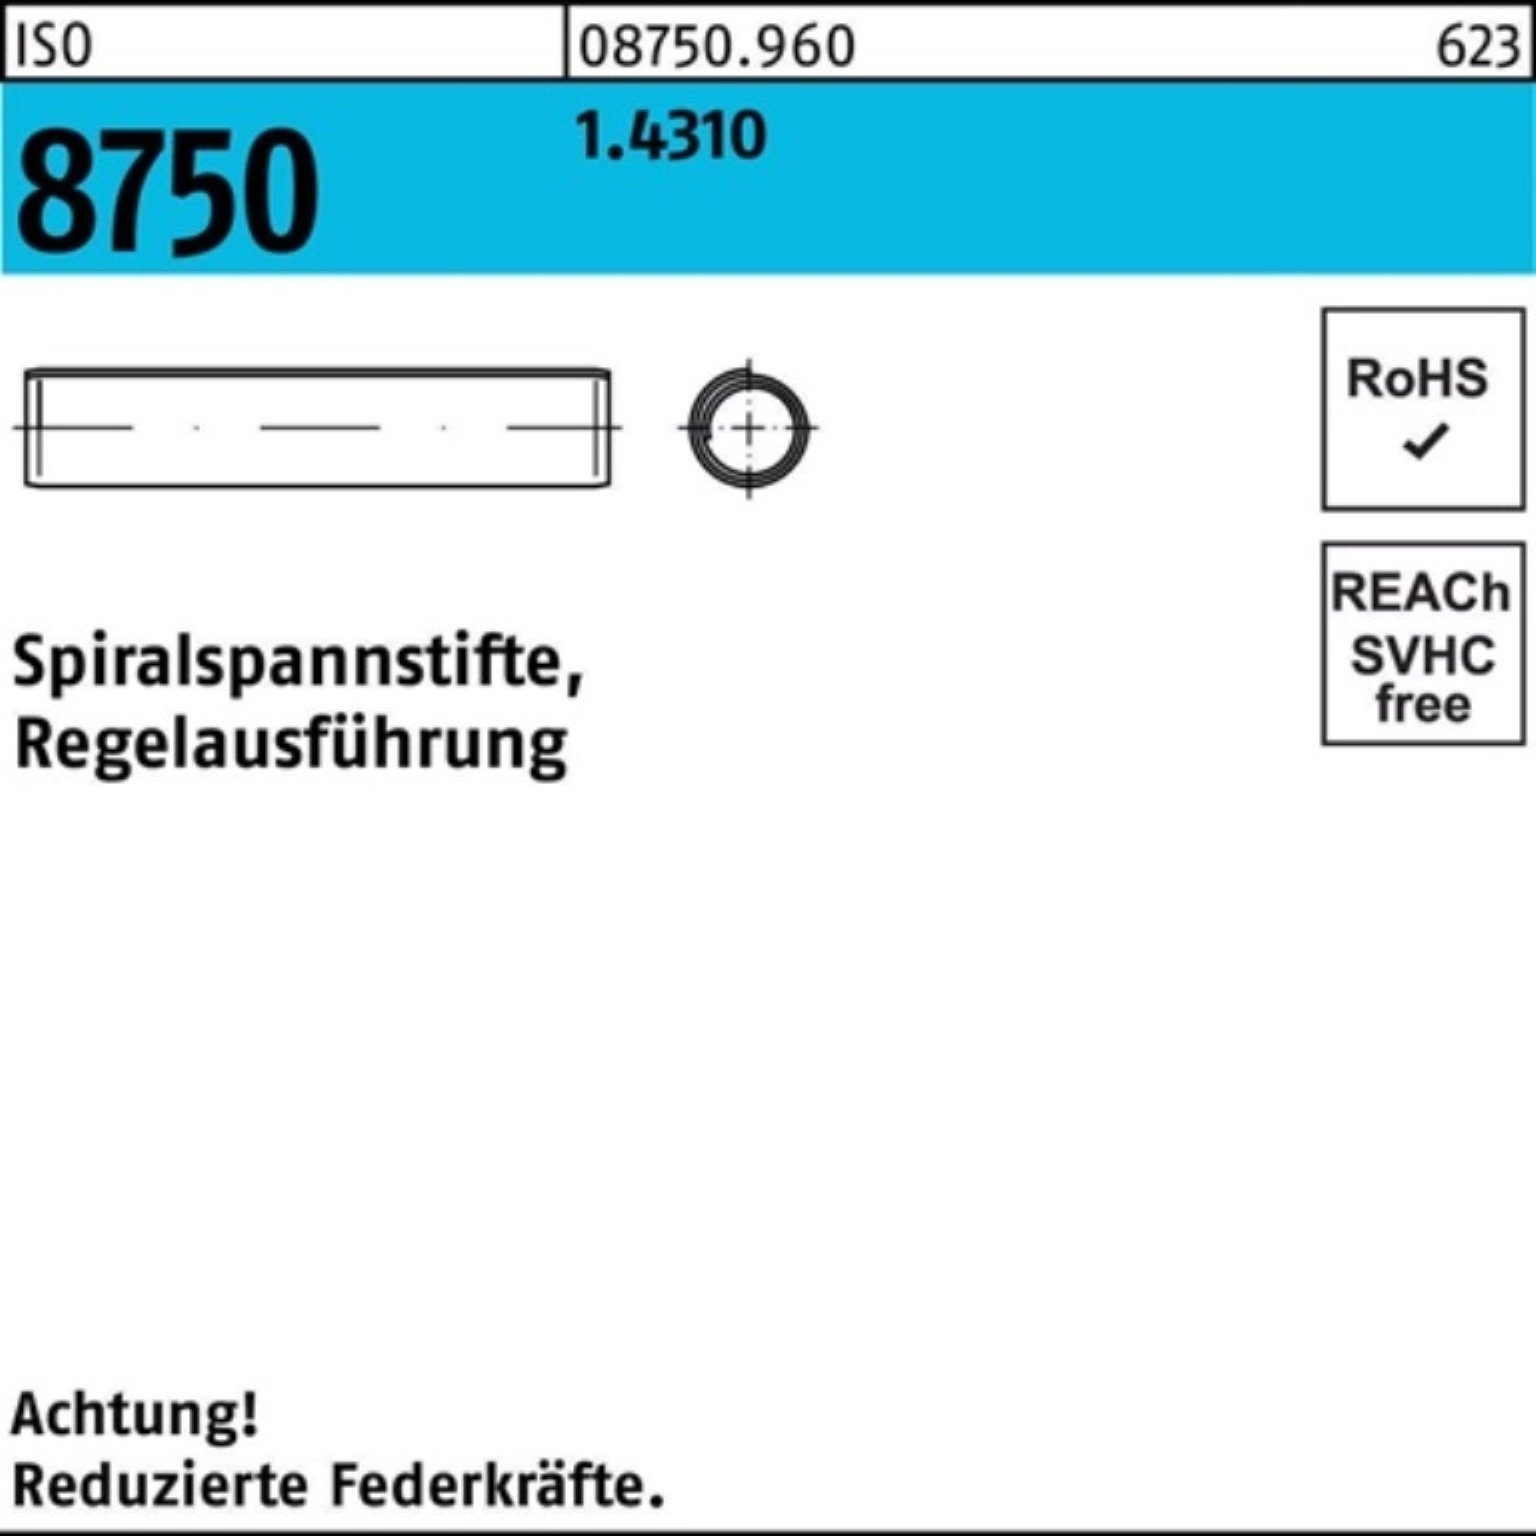 500 Pack Stüc Spannstift 8x Spiralspannstift Regelausf. Reyher 8750 ISO 1.4310 20 500er